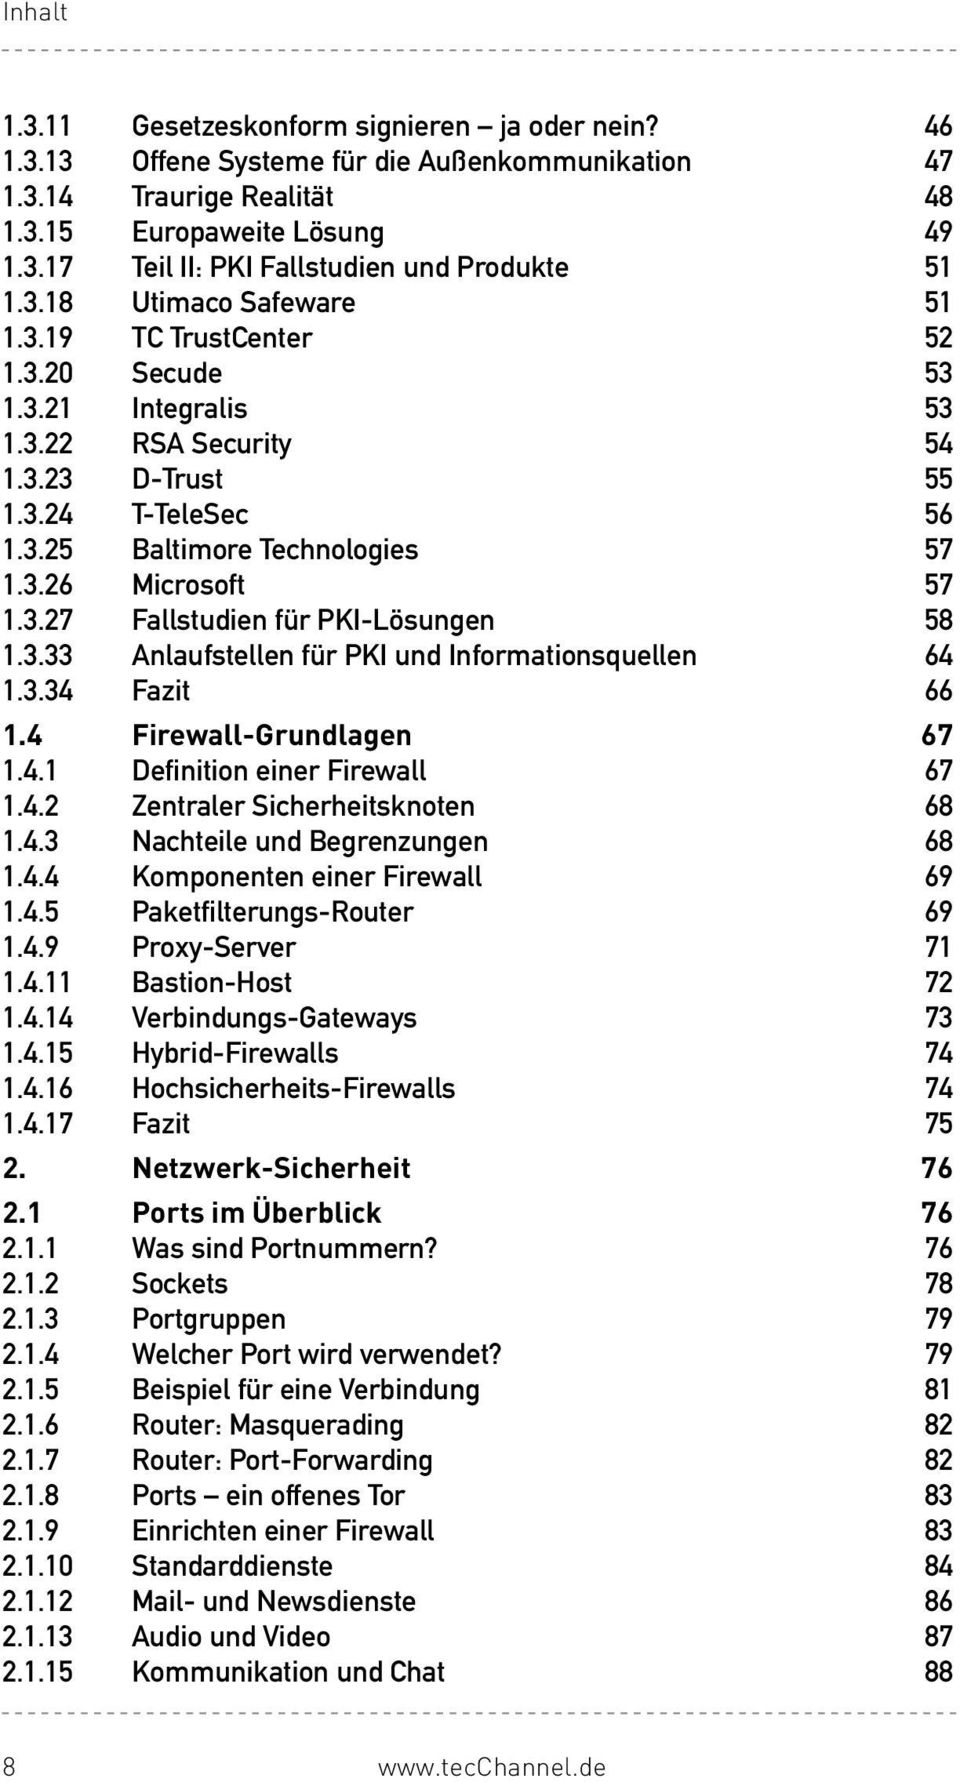 3.27 Fallstudien für PKI-Lösungen 58 1.3.33 Anlaufstellen für PKI und Informationsquellen 64 1.3.34 Fazit 66 1.4 Firewall-Grundlagen 67 1.4.1 Definition einer Firewall 67 1.4.2 Zentraler Sicherheitsknoten 68 1.